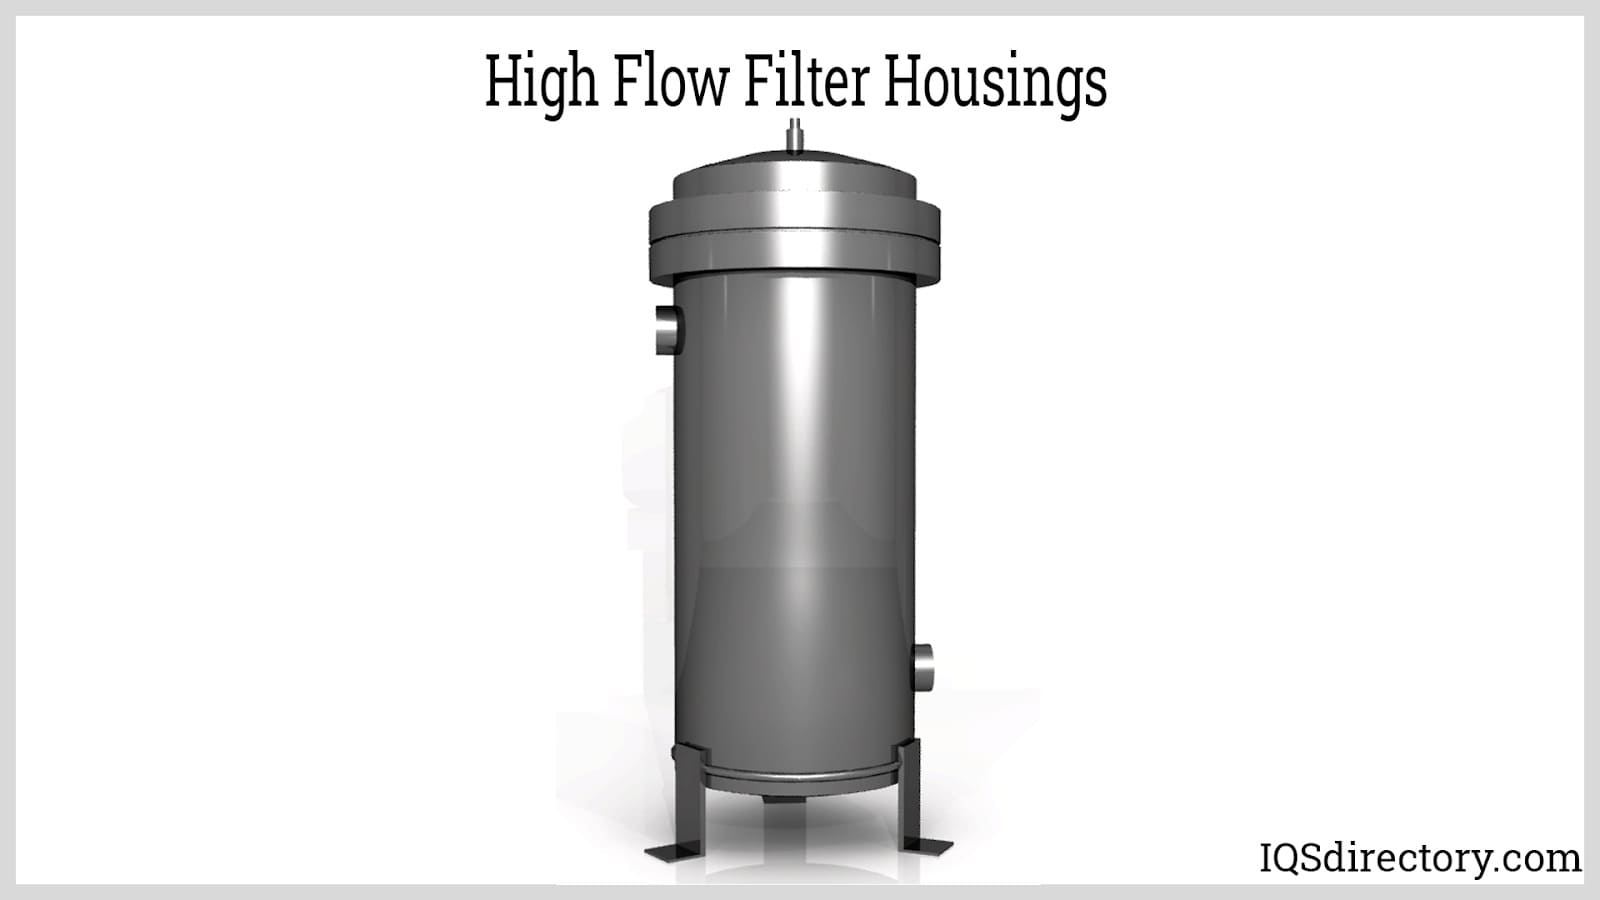 High Flow Filter Housings